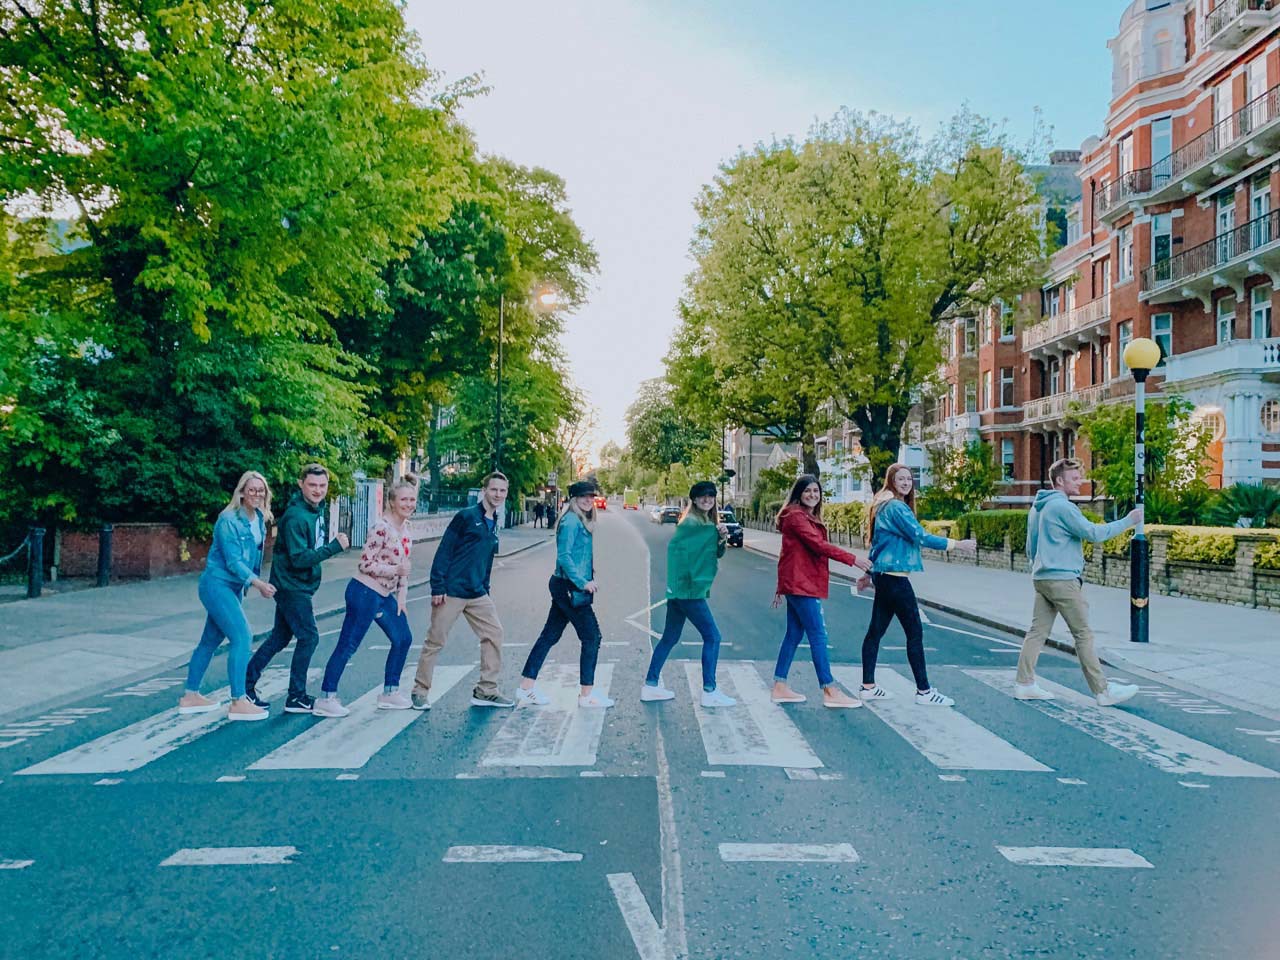 People walking across crosswalk on Abbey Road.